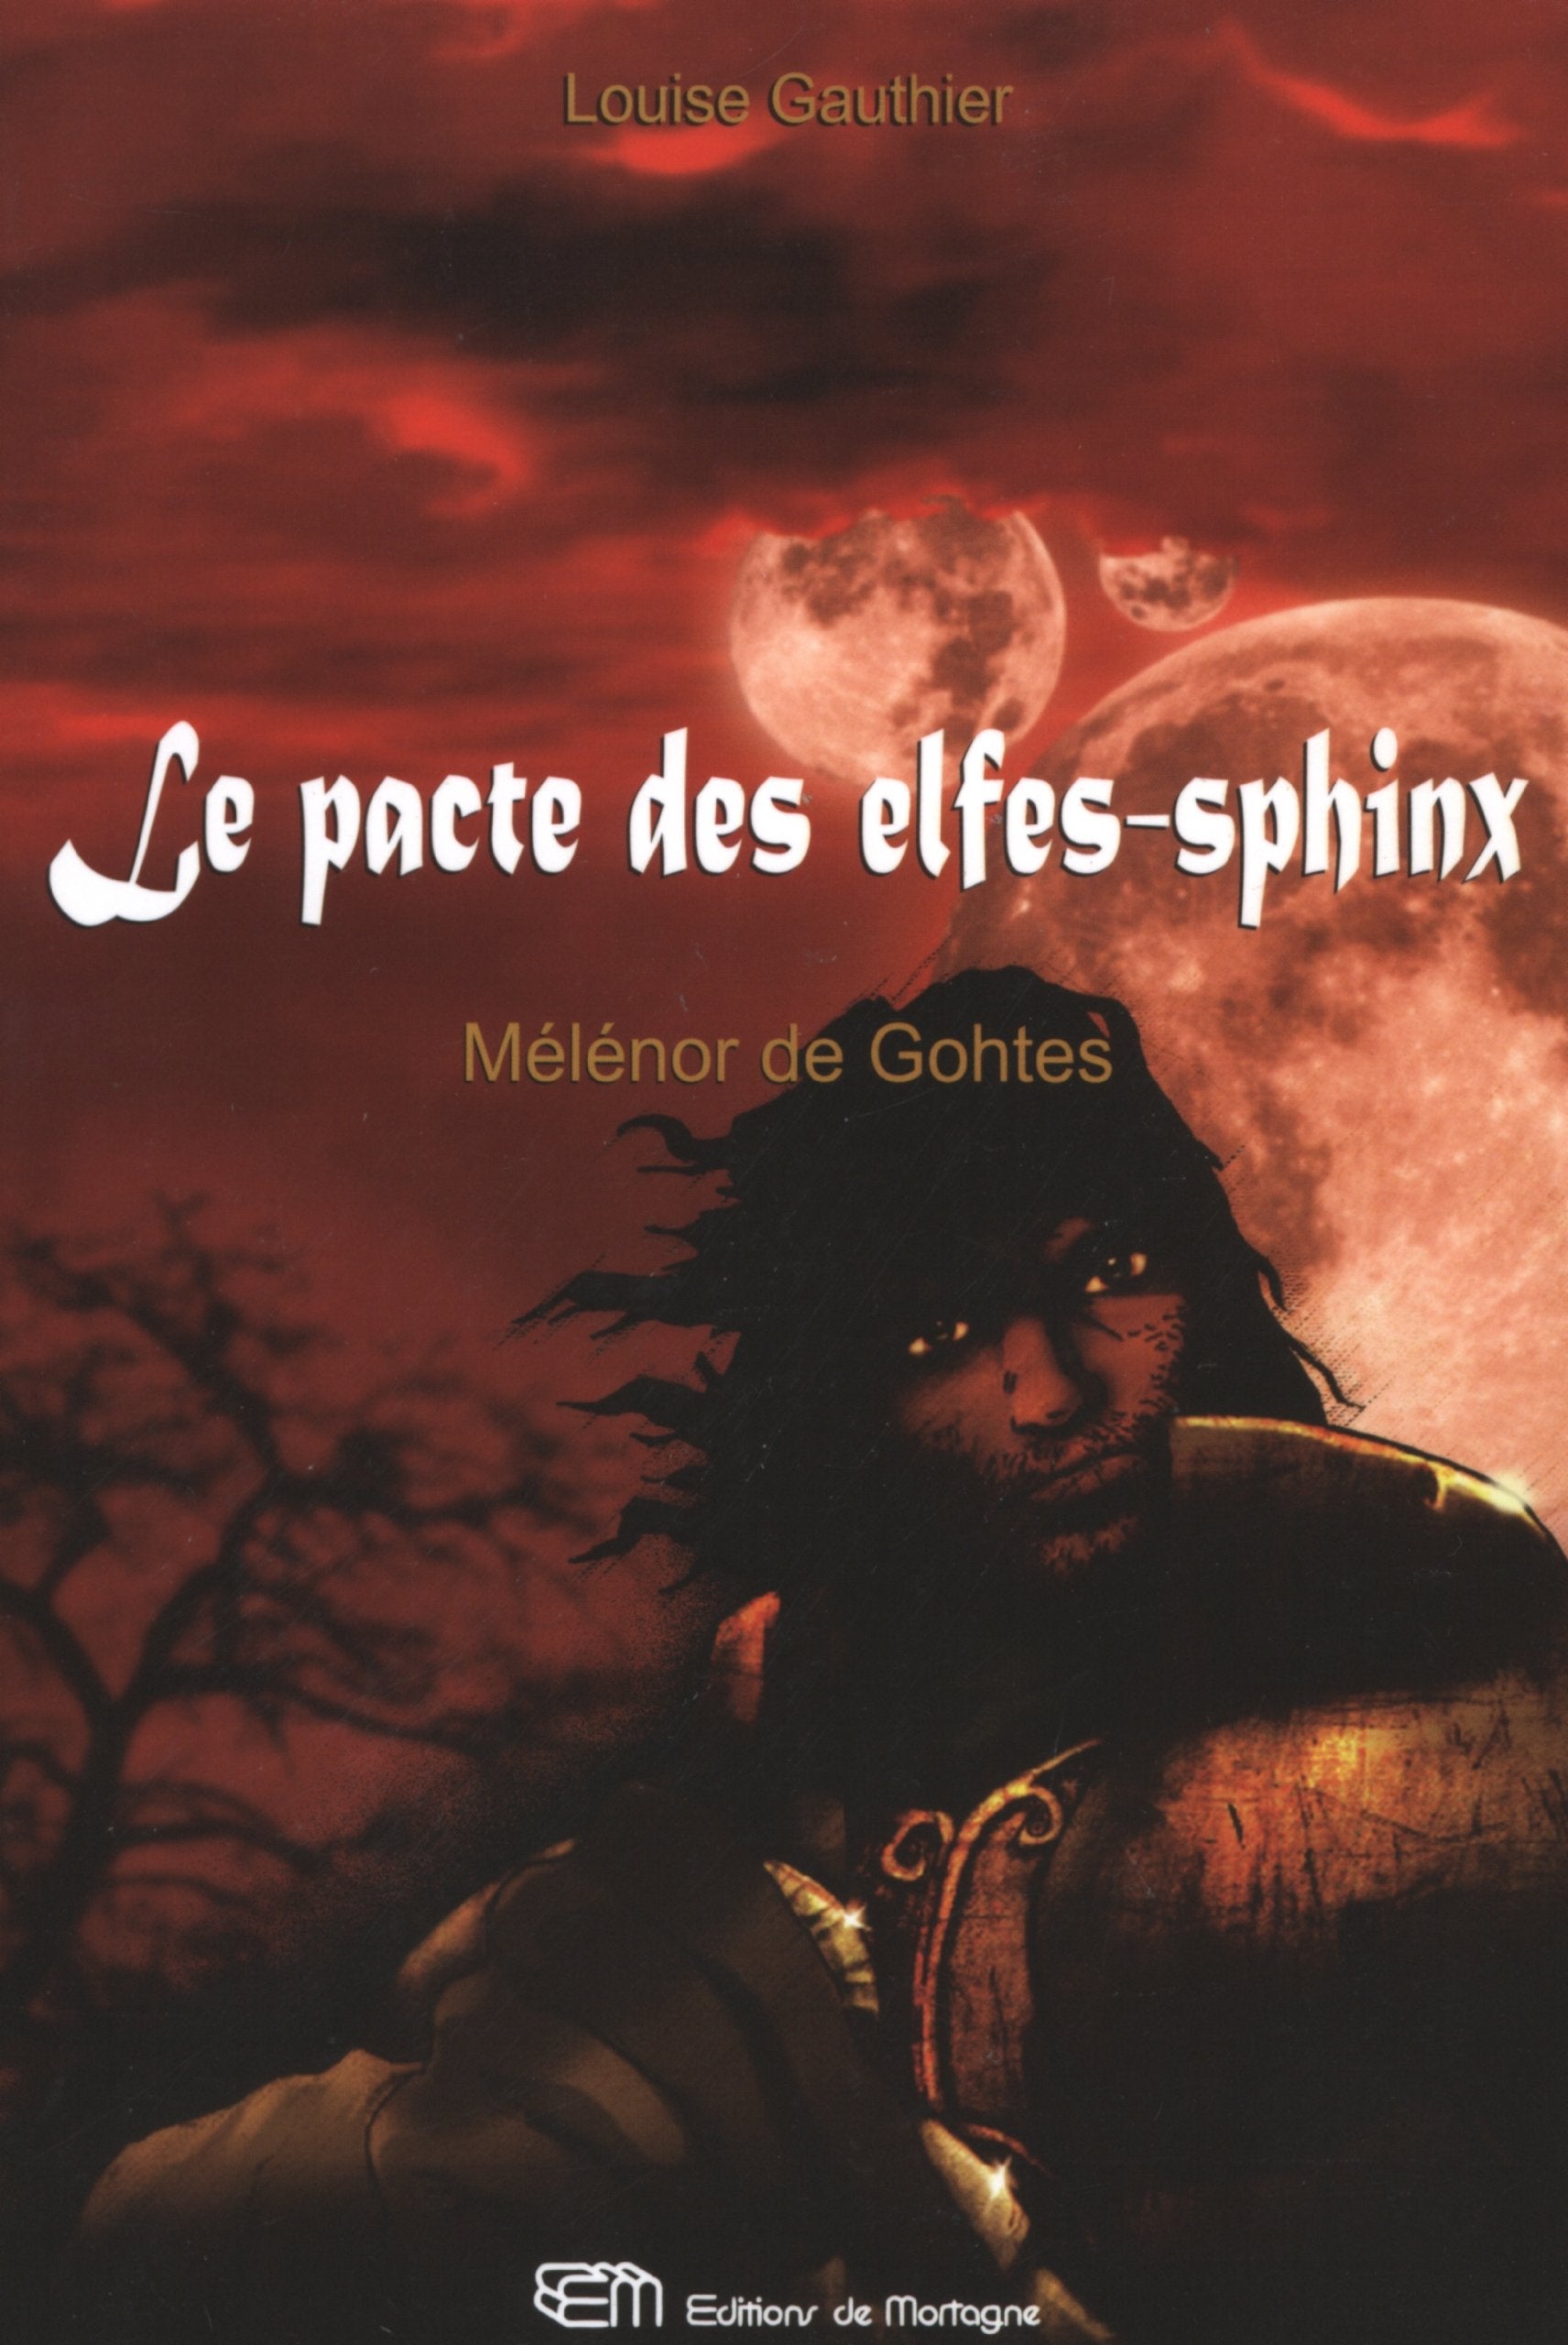 Le pacte des elfes-sphinx # 1 : Mélénor de Gothes - Louise Gauthier